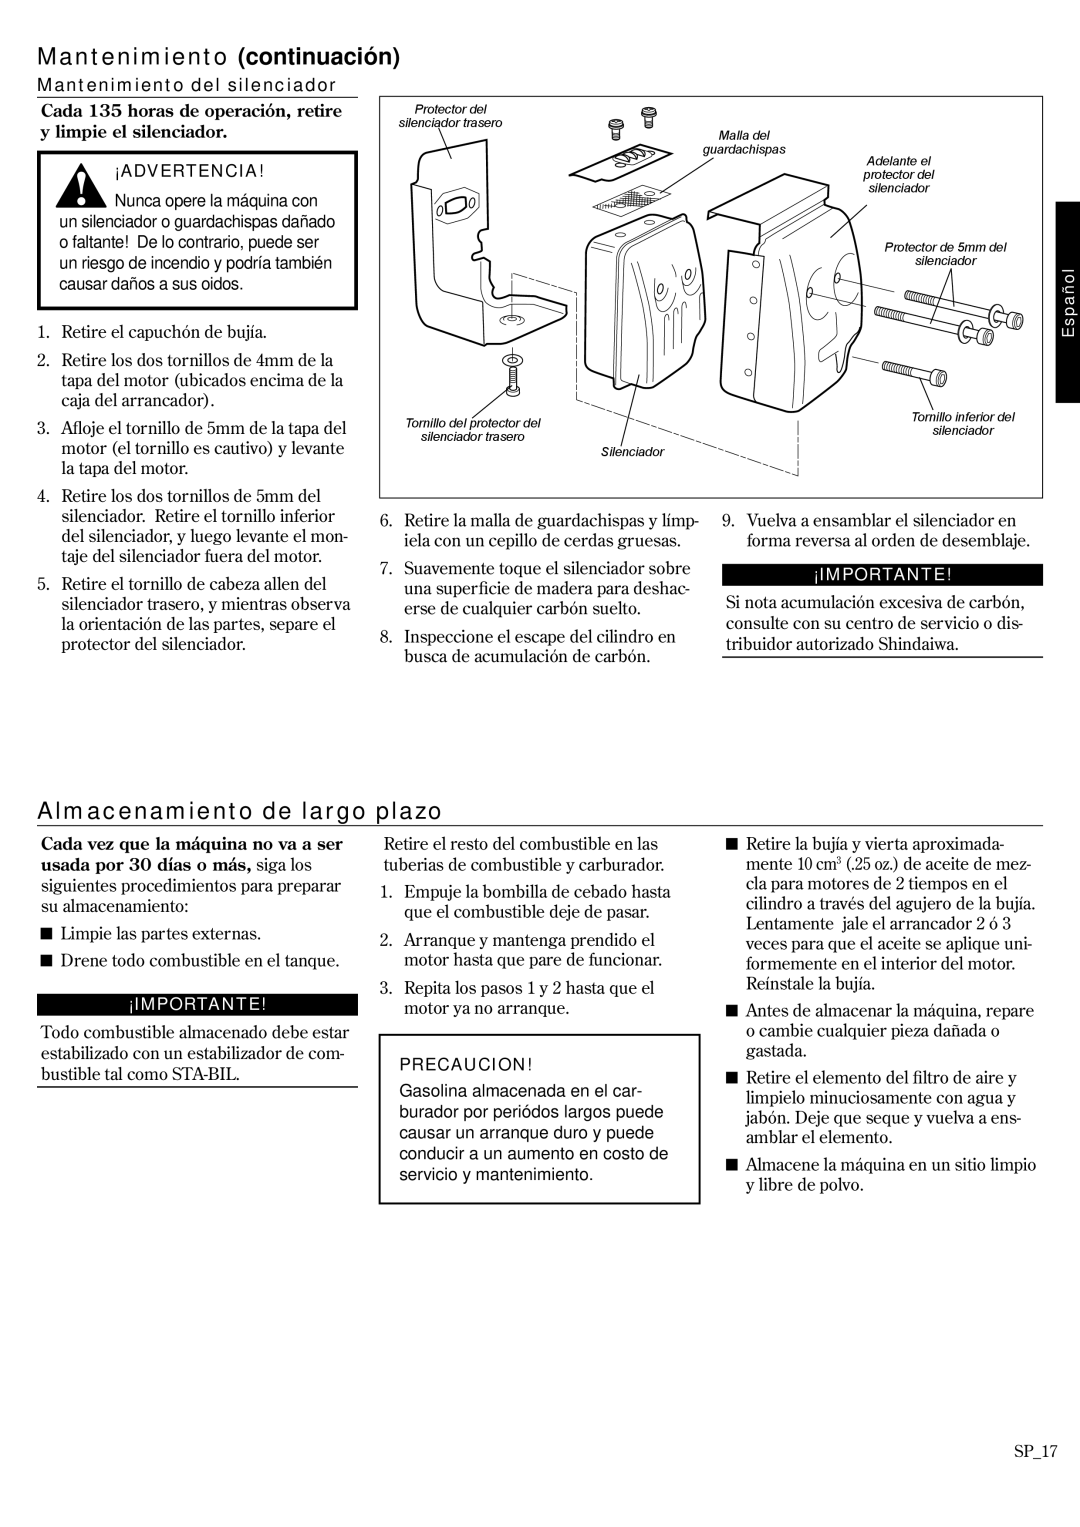 Shindaiwa P231 manual Almacenamiento de largo plazo, Mantenimiento del silenciador, Precaucion, Mantenimiento continuación 